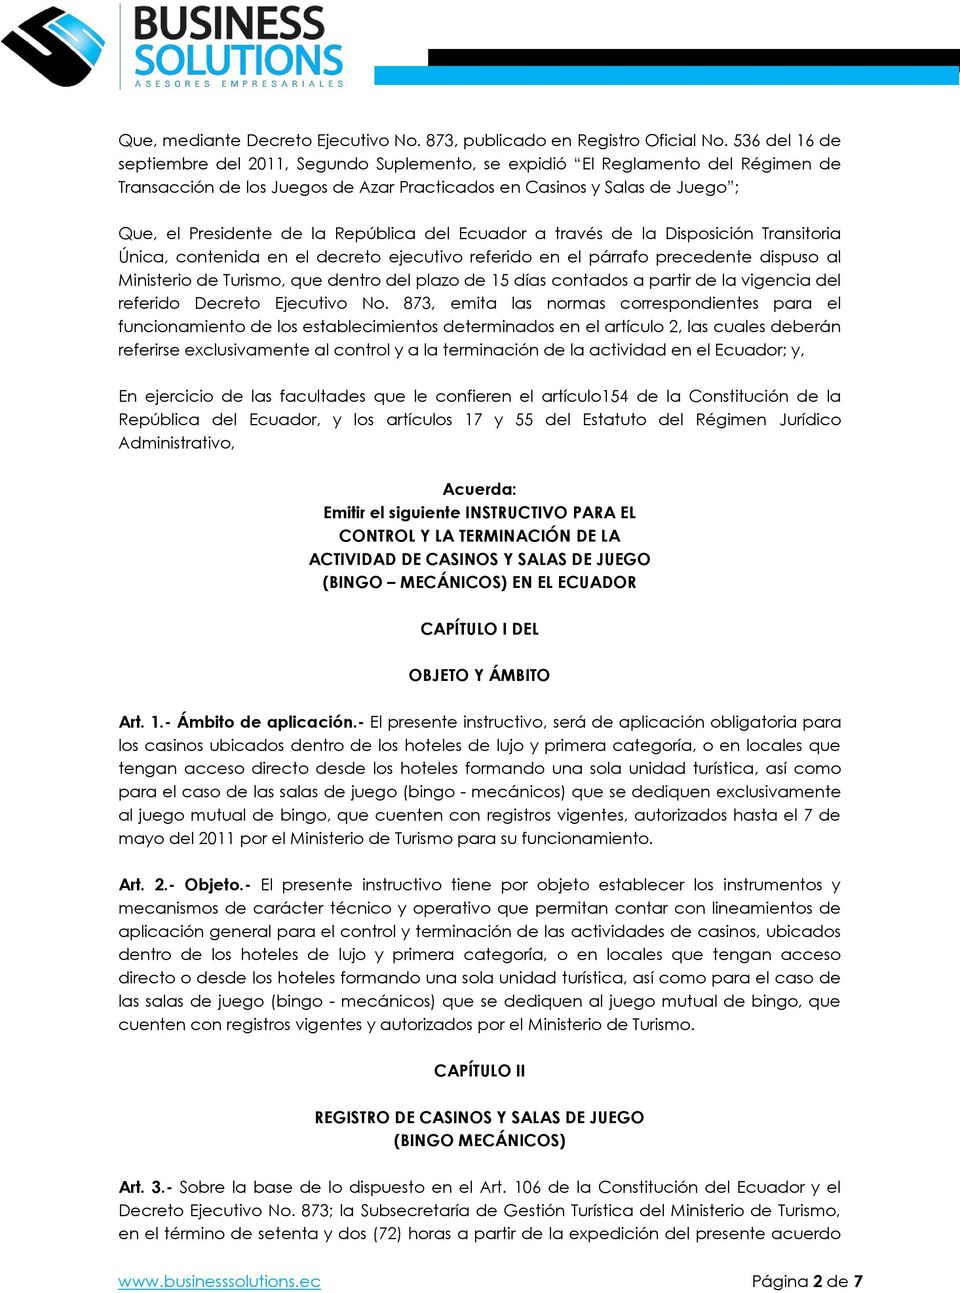 República del Ecuador a través de la Disposición Transitoria Única, contenida en el decreto ejecutivo referido en el párrafo precedente dispuso al Ministerio de Turismo, que dentro del plazo de 15